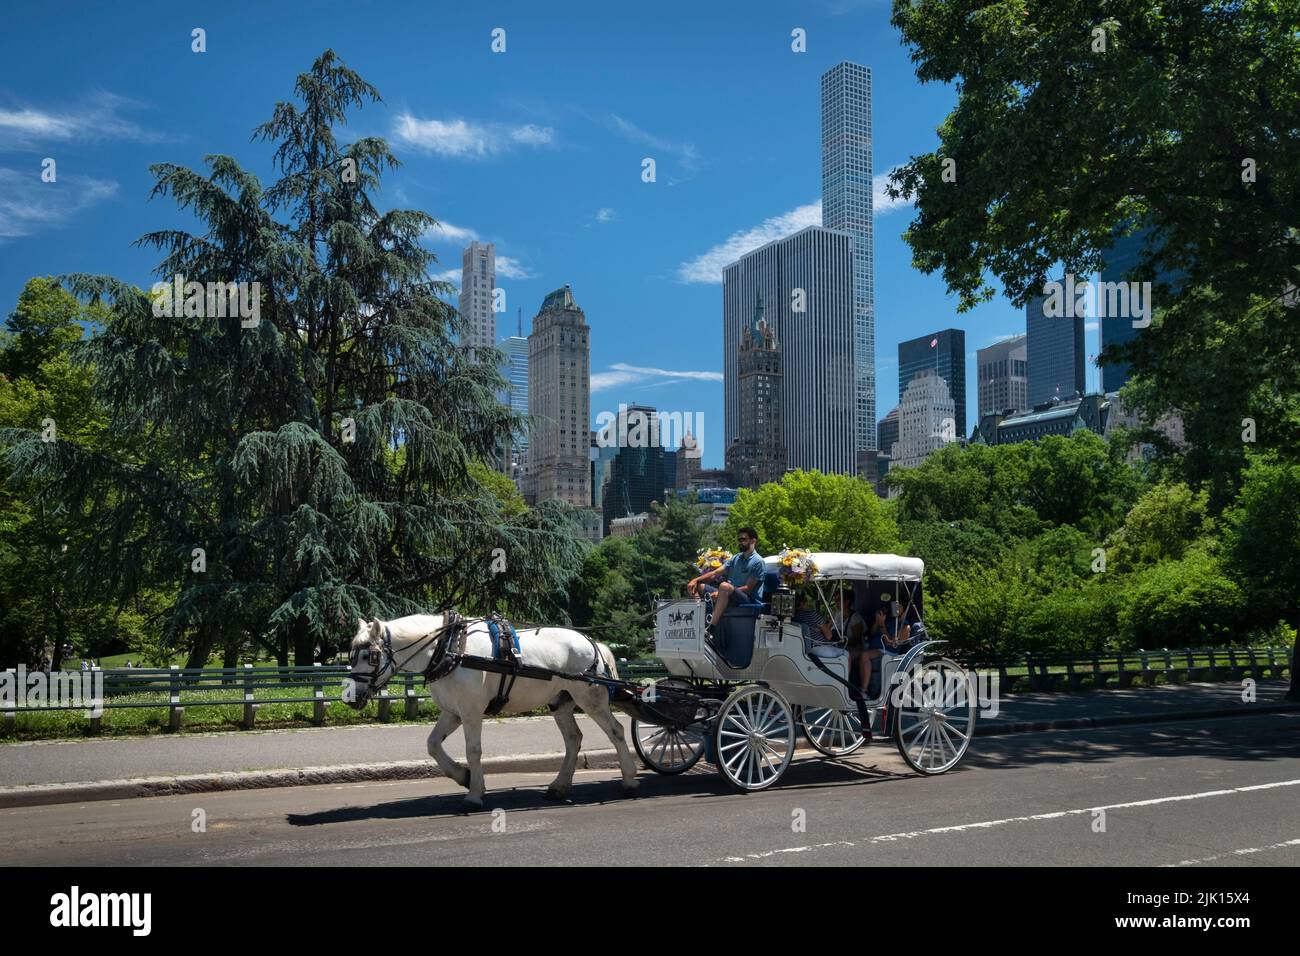 Promenade en calèche à travers Central Park avec les gratte-ciel de New York derrière, Central Park, Manhattan, New York, États-Unis d'Amérique, Amérique du Nord Banque D'Images